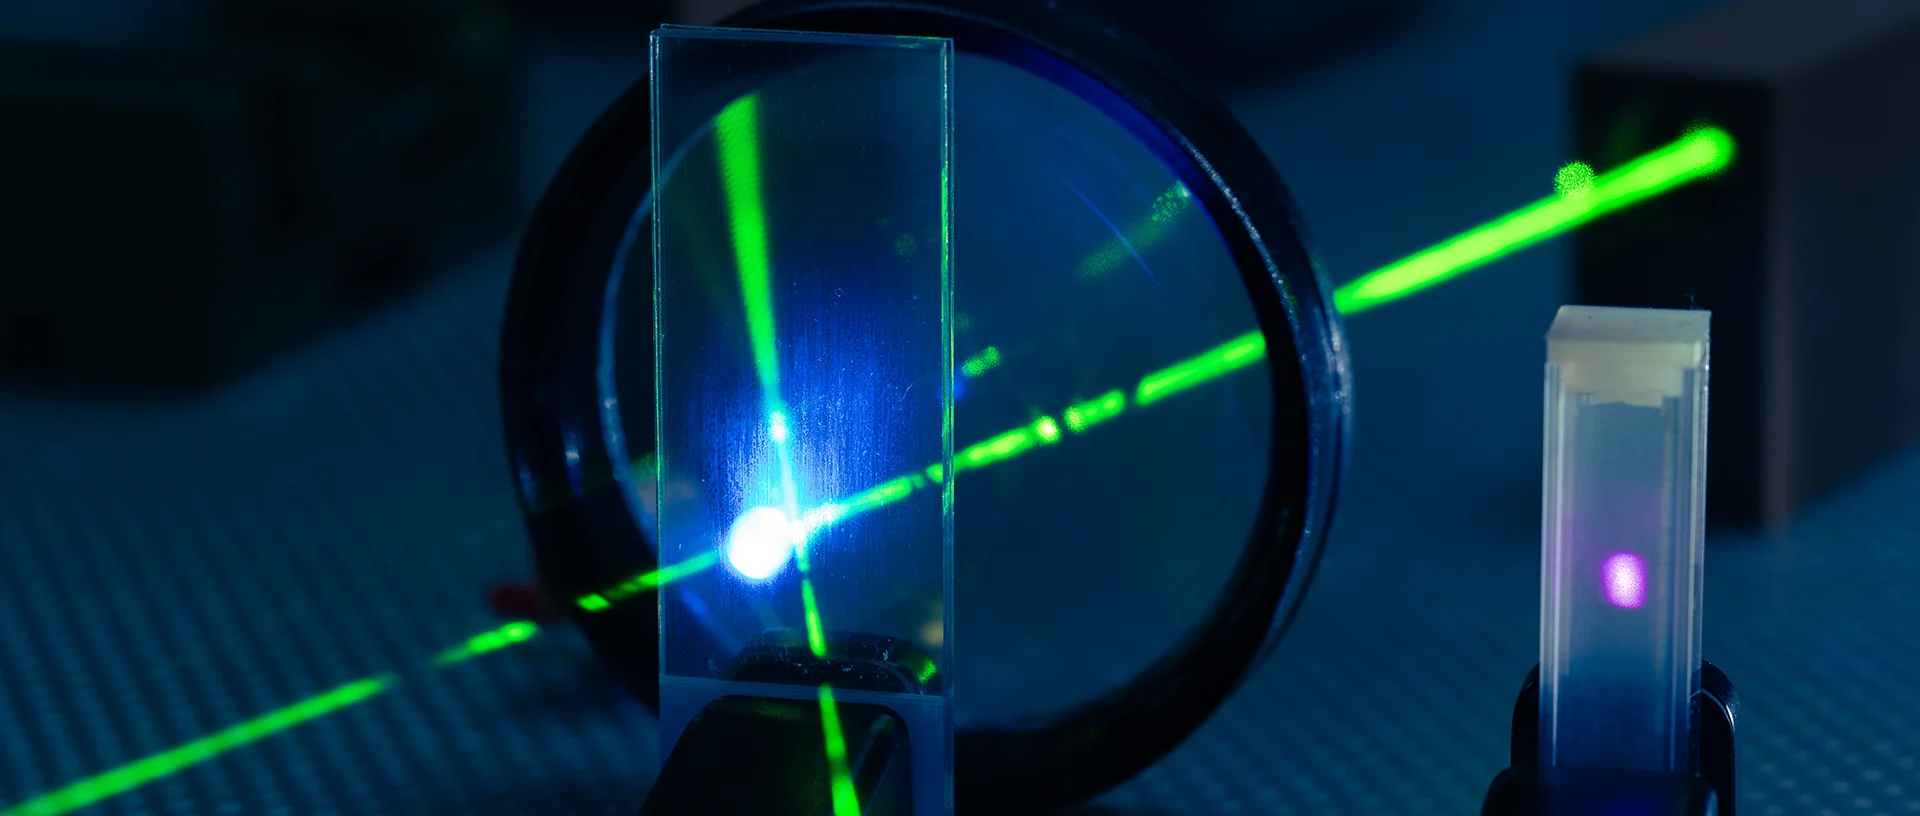 Fotografie einer Lupe, durch die ein grüner Laserstrahl geschickt und gebrochen wird